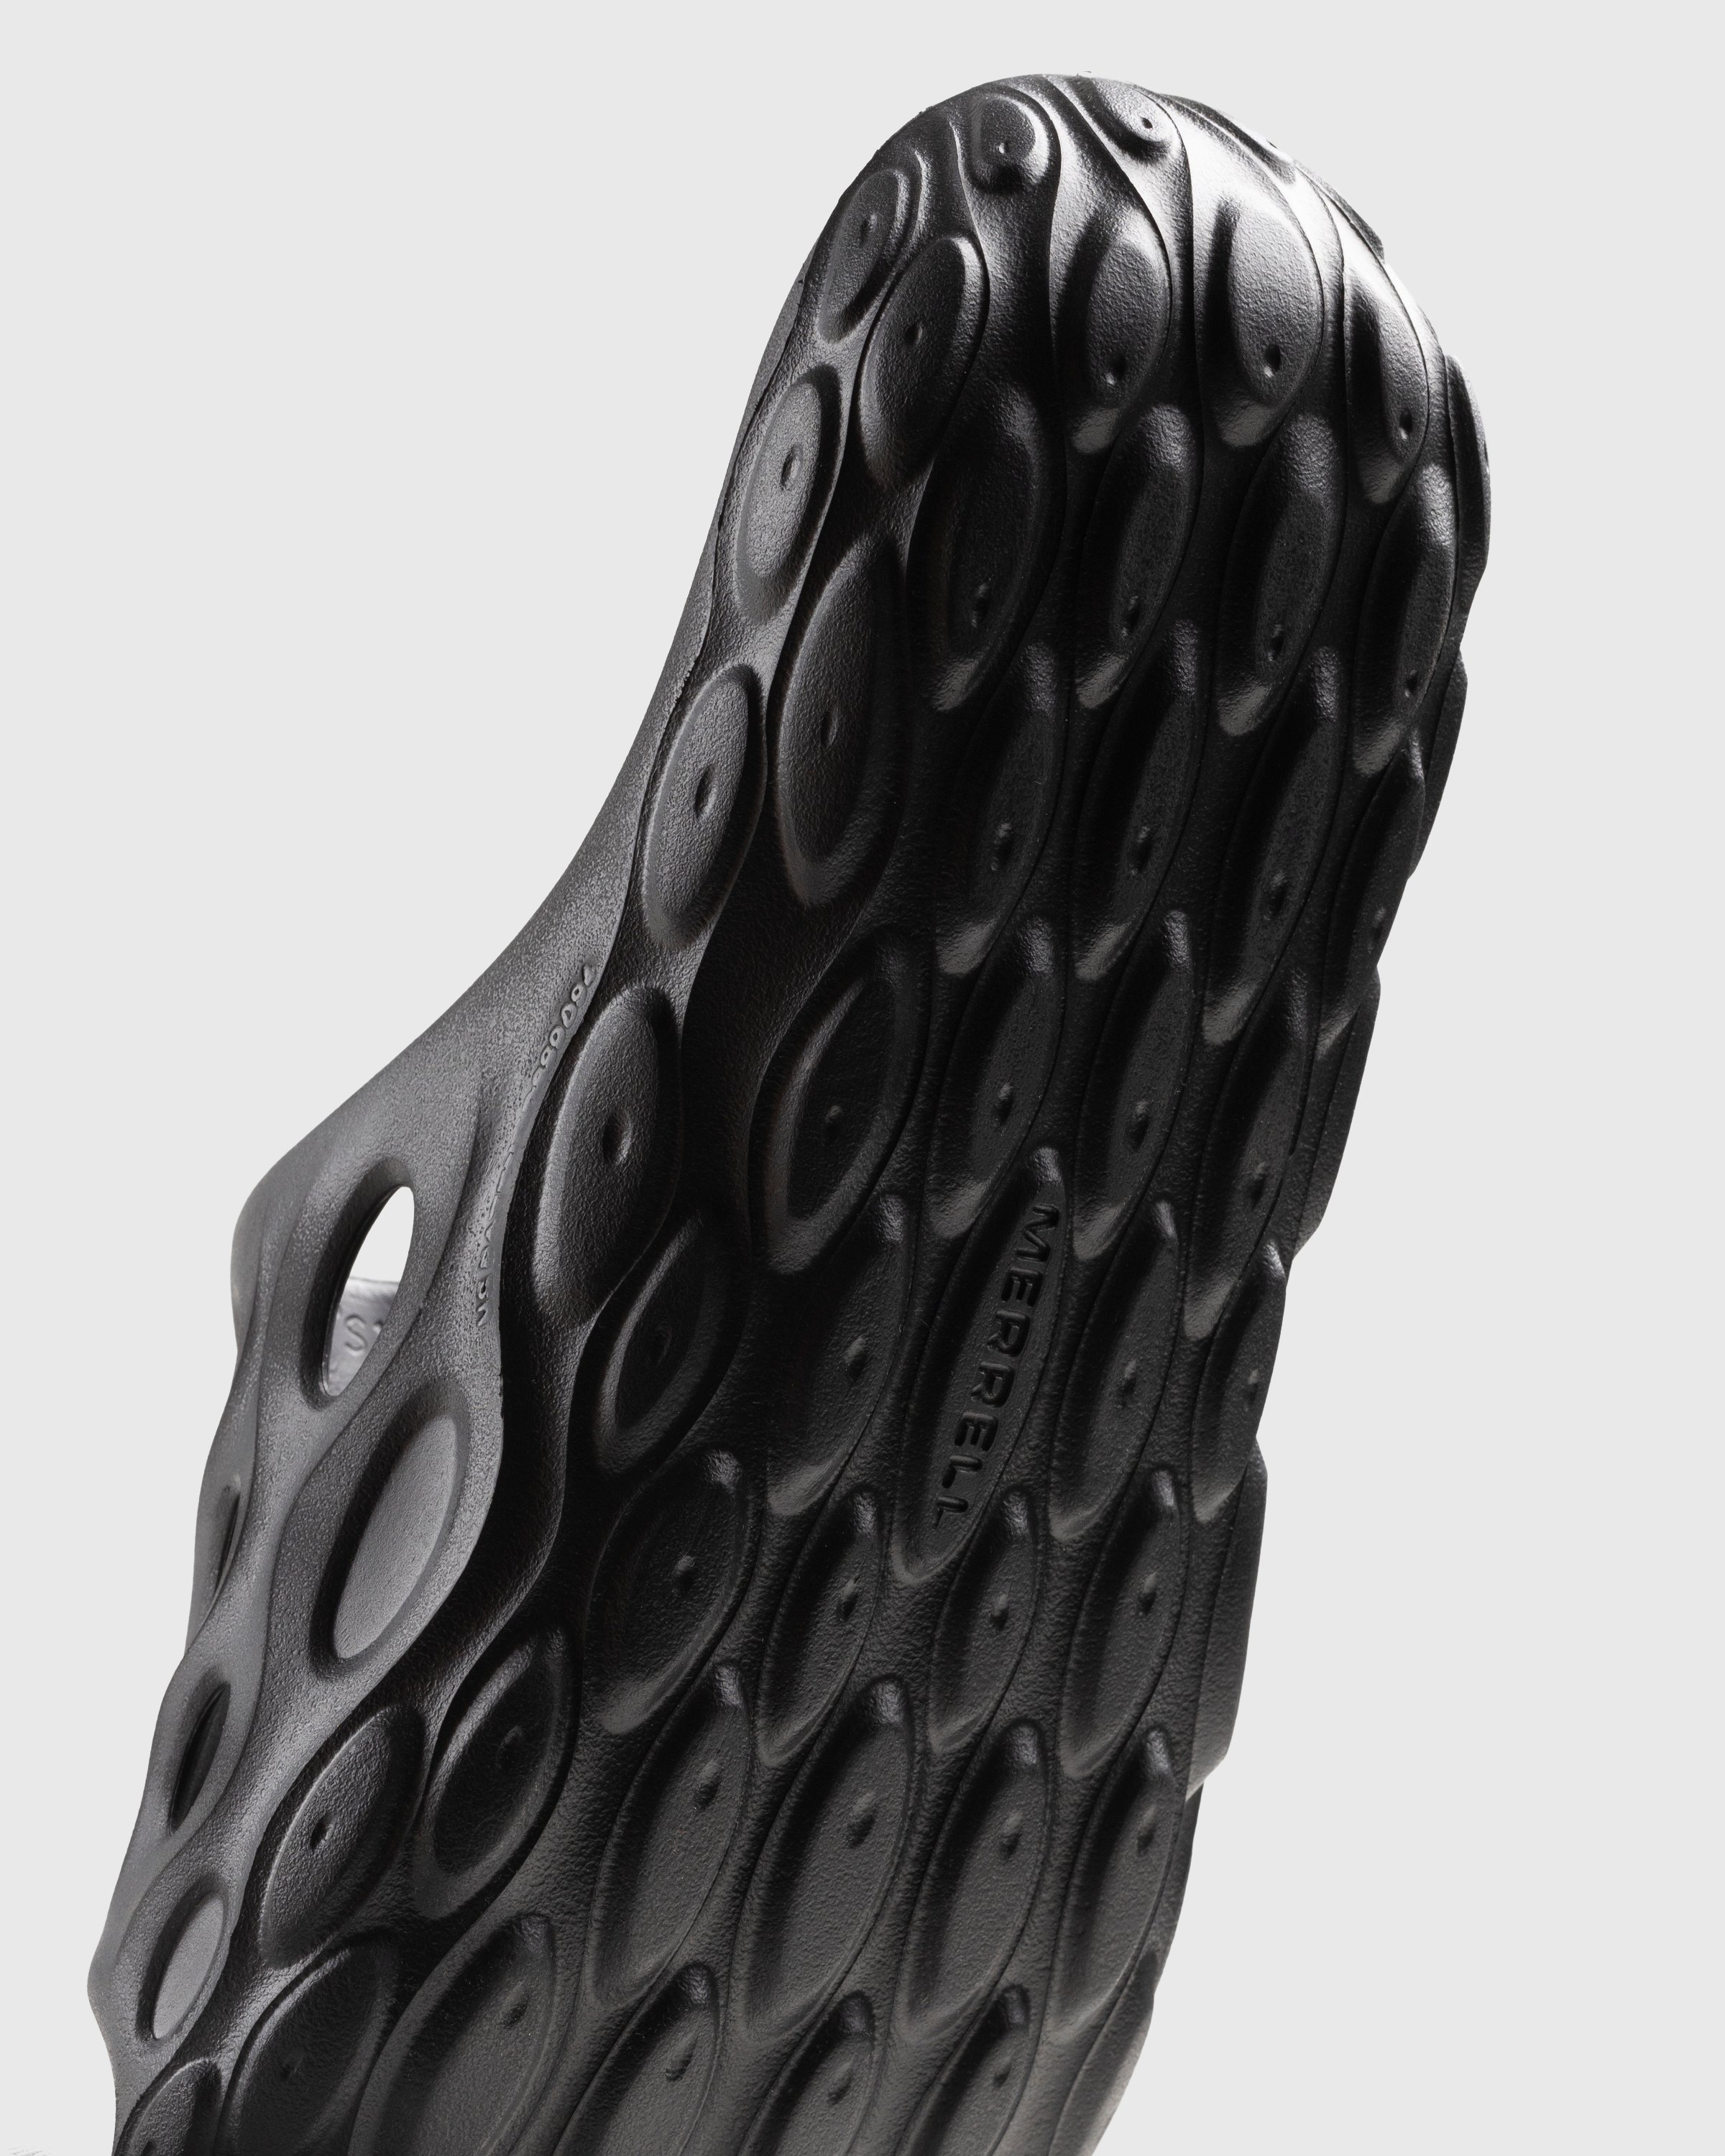 Merrell - Hydro Slide Black/Grey - Footwear - Black - Image 6